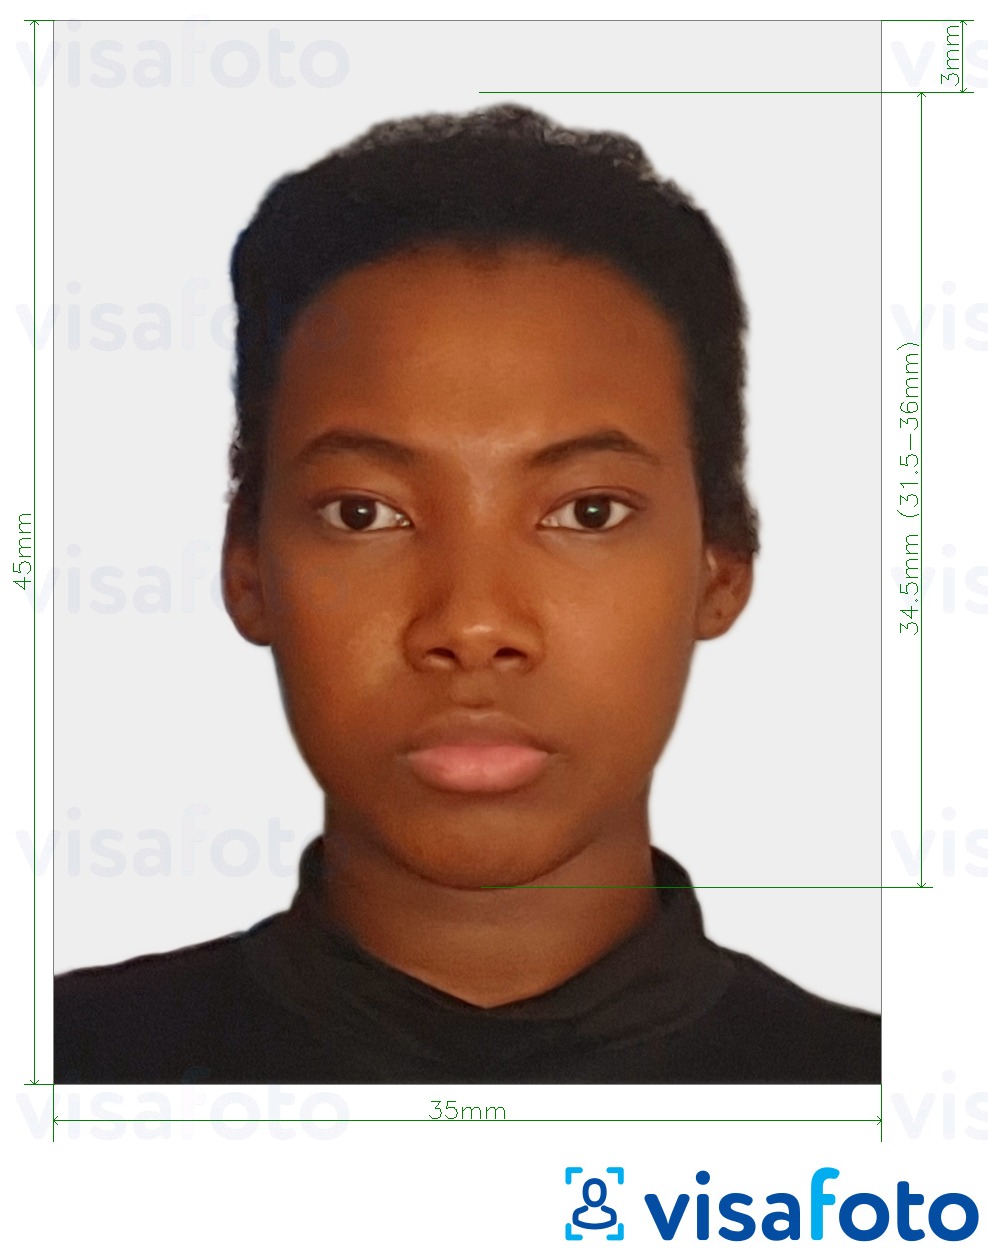 Exemples sur des photos pour Passeport du Suriname 45x35 mm (1.77x1.37 inch) avec les spécifications de taille exactes